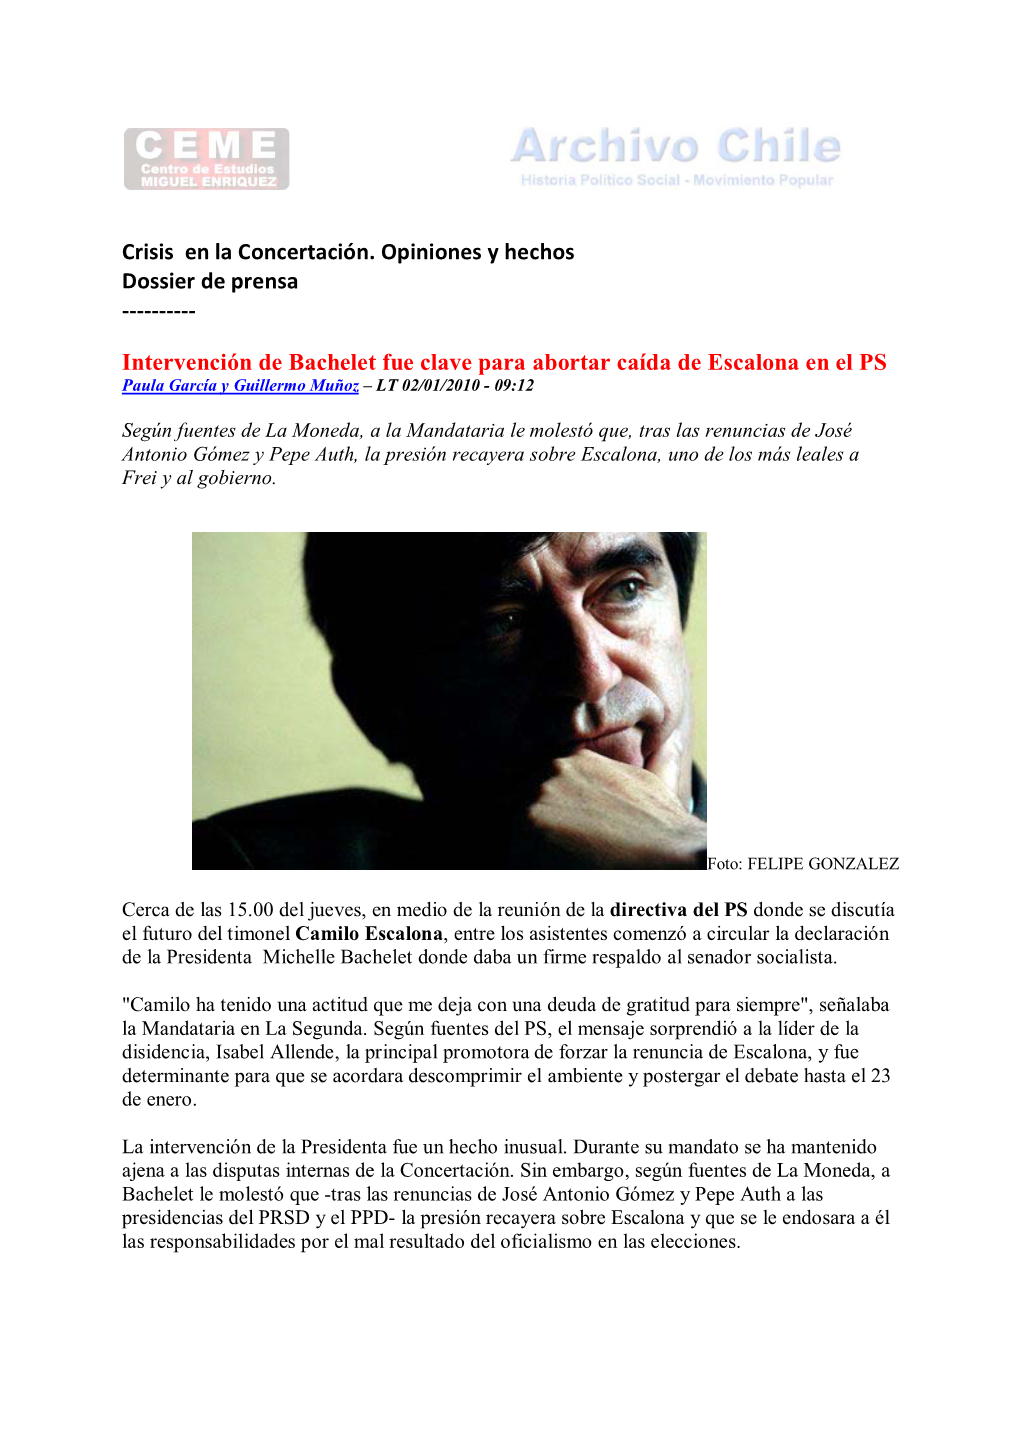 2010 01 03 Crisis En La Concertación. Opiniones Y Hechos. Dossier De